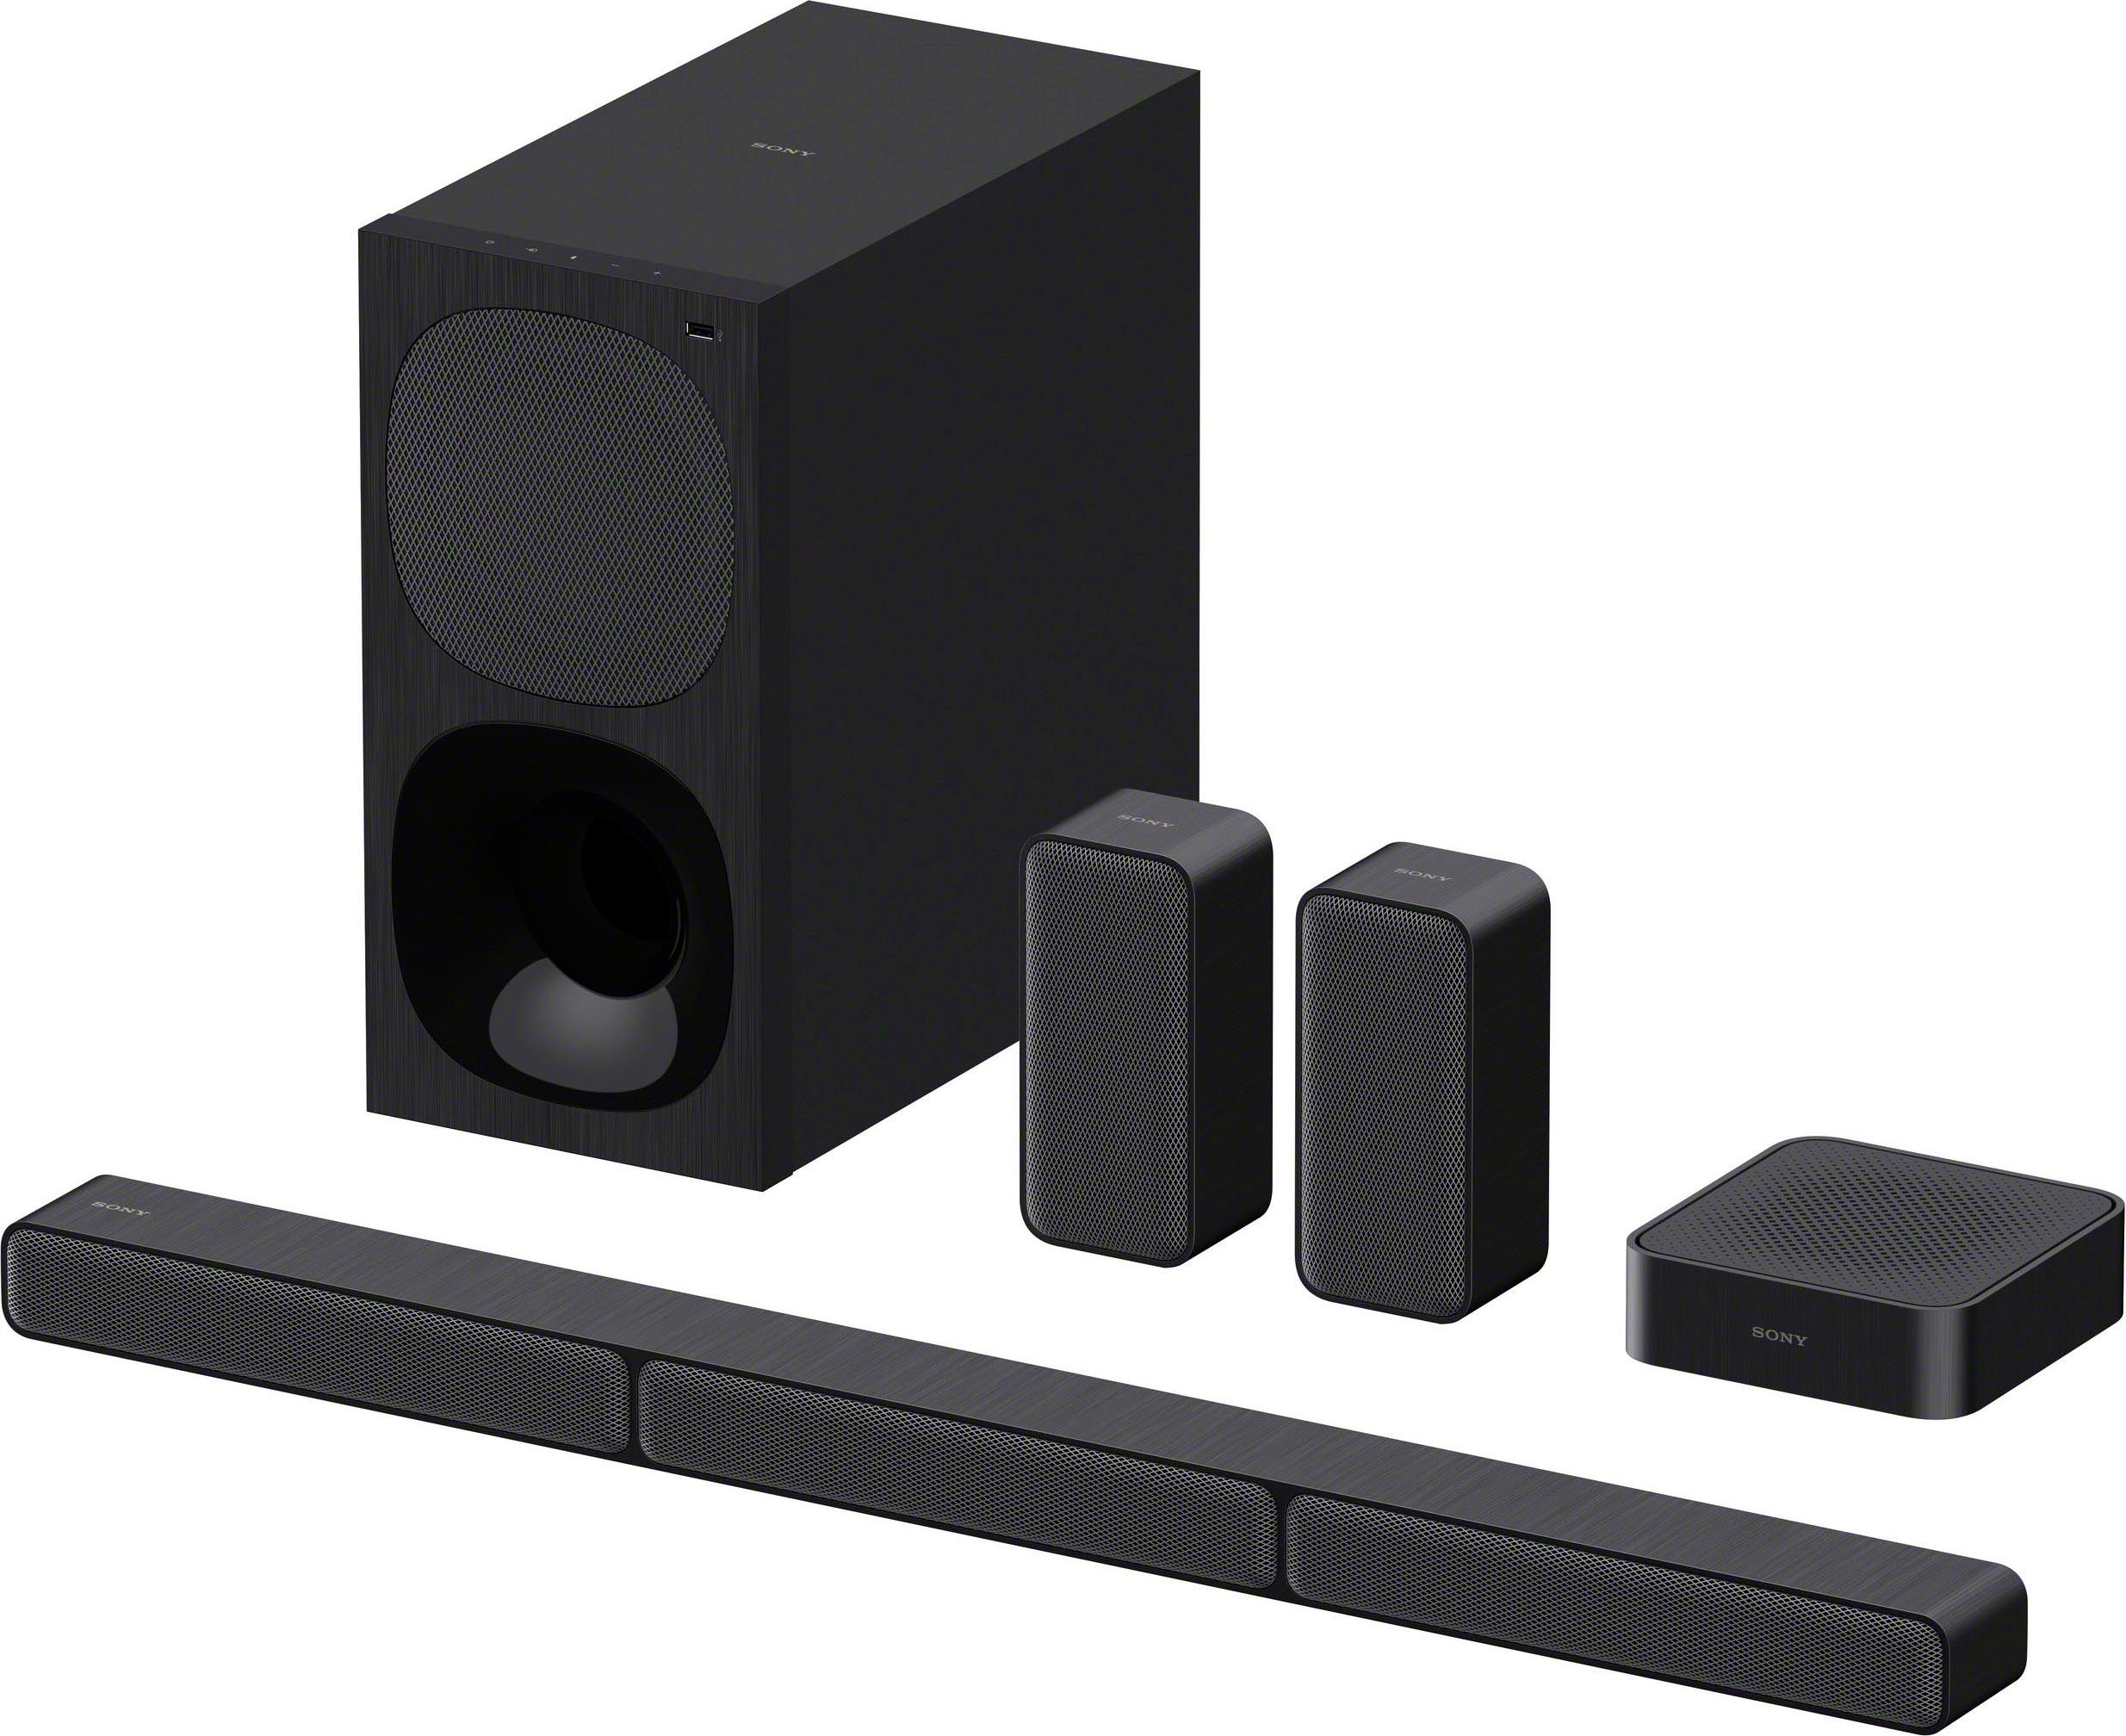 Sony HT-S40R Kanal- 5.1 Soundbar (Bluetooth, 600 W, inkl. kabelgebundenem  Subwoofer, kabellosen Rear-Lautsprechern, Surround Sound, Dolby Digital)  online kaufen | OTTO